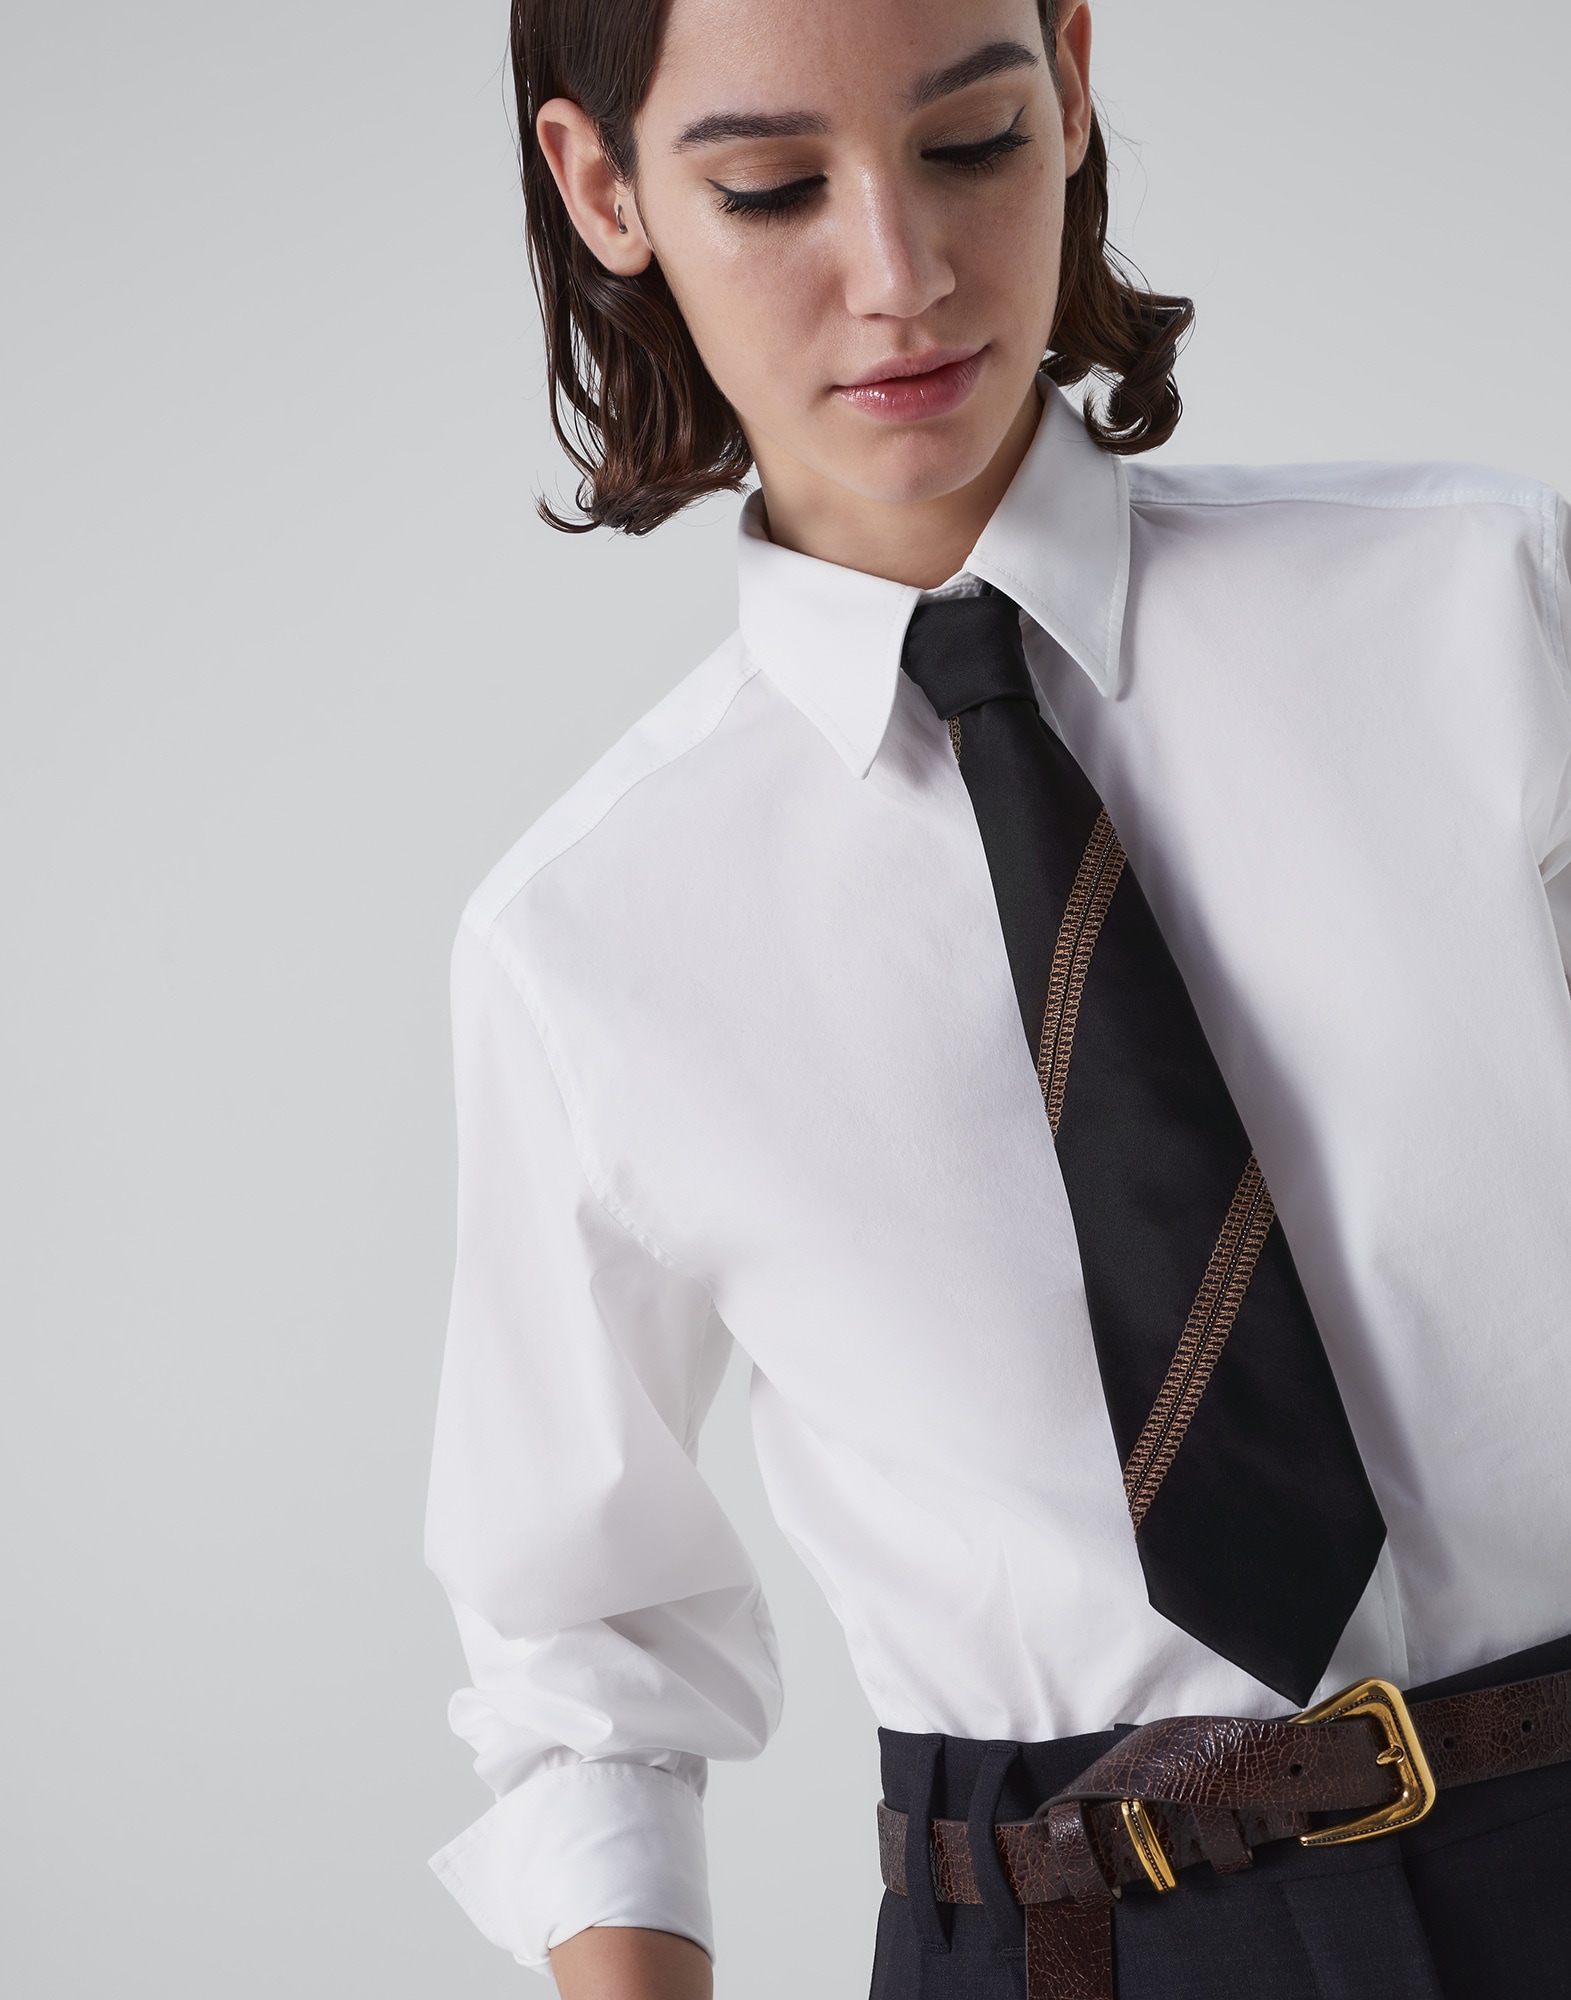 Silk textured stripe tie Black Woman - Brunello Cucinelli